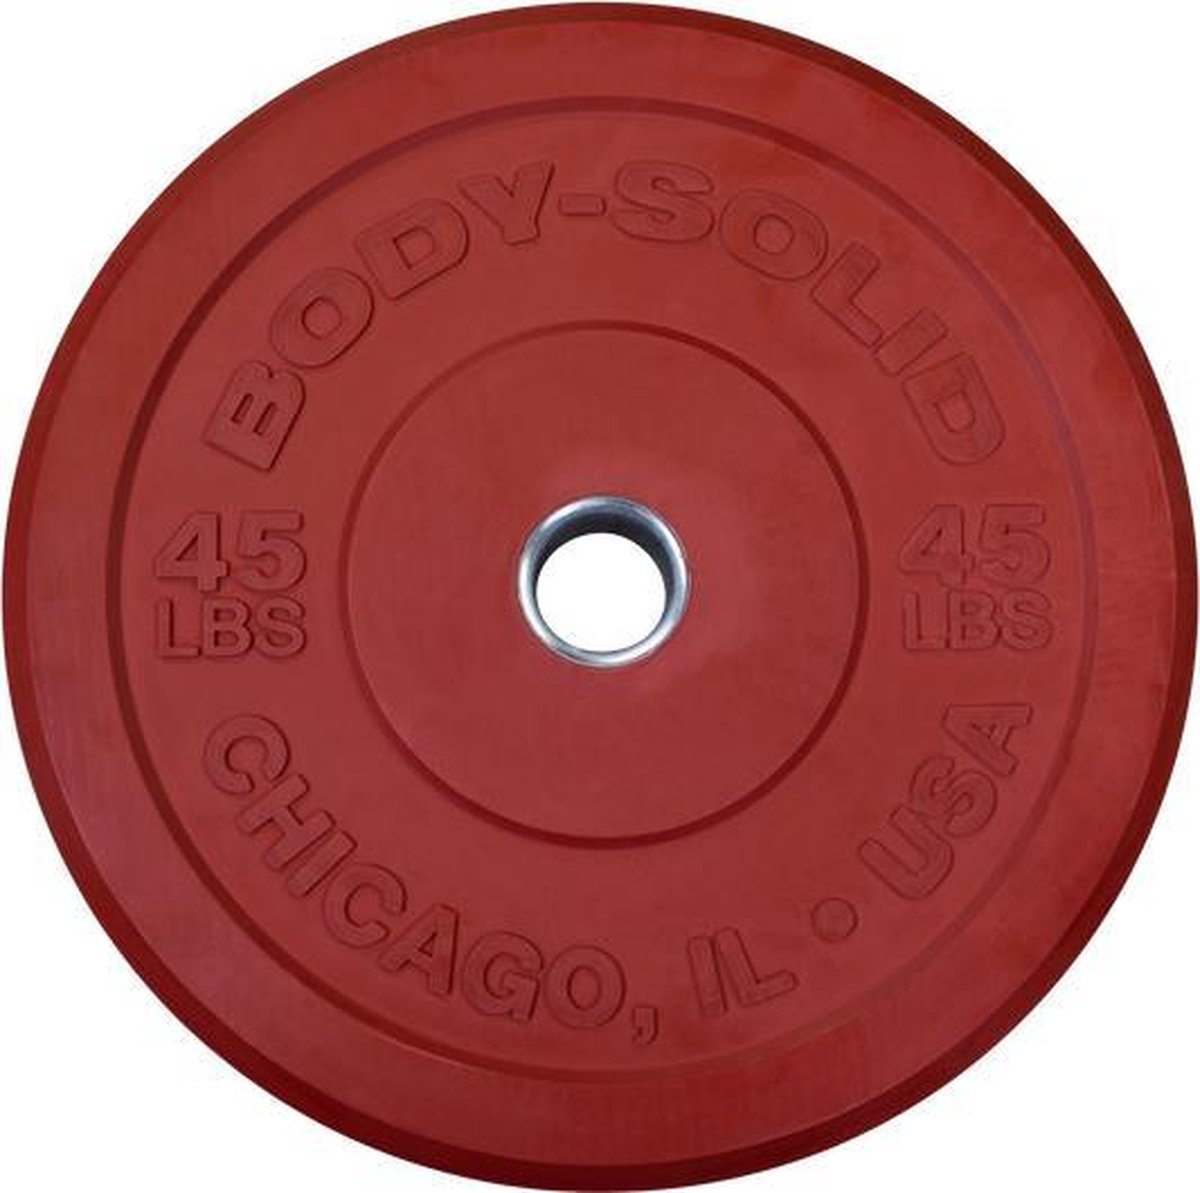 Body-Solid Chicago Extreme Gekleurde Olympische Bumper Plates Obpxck - 25 Kg - Rood